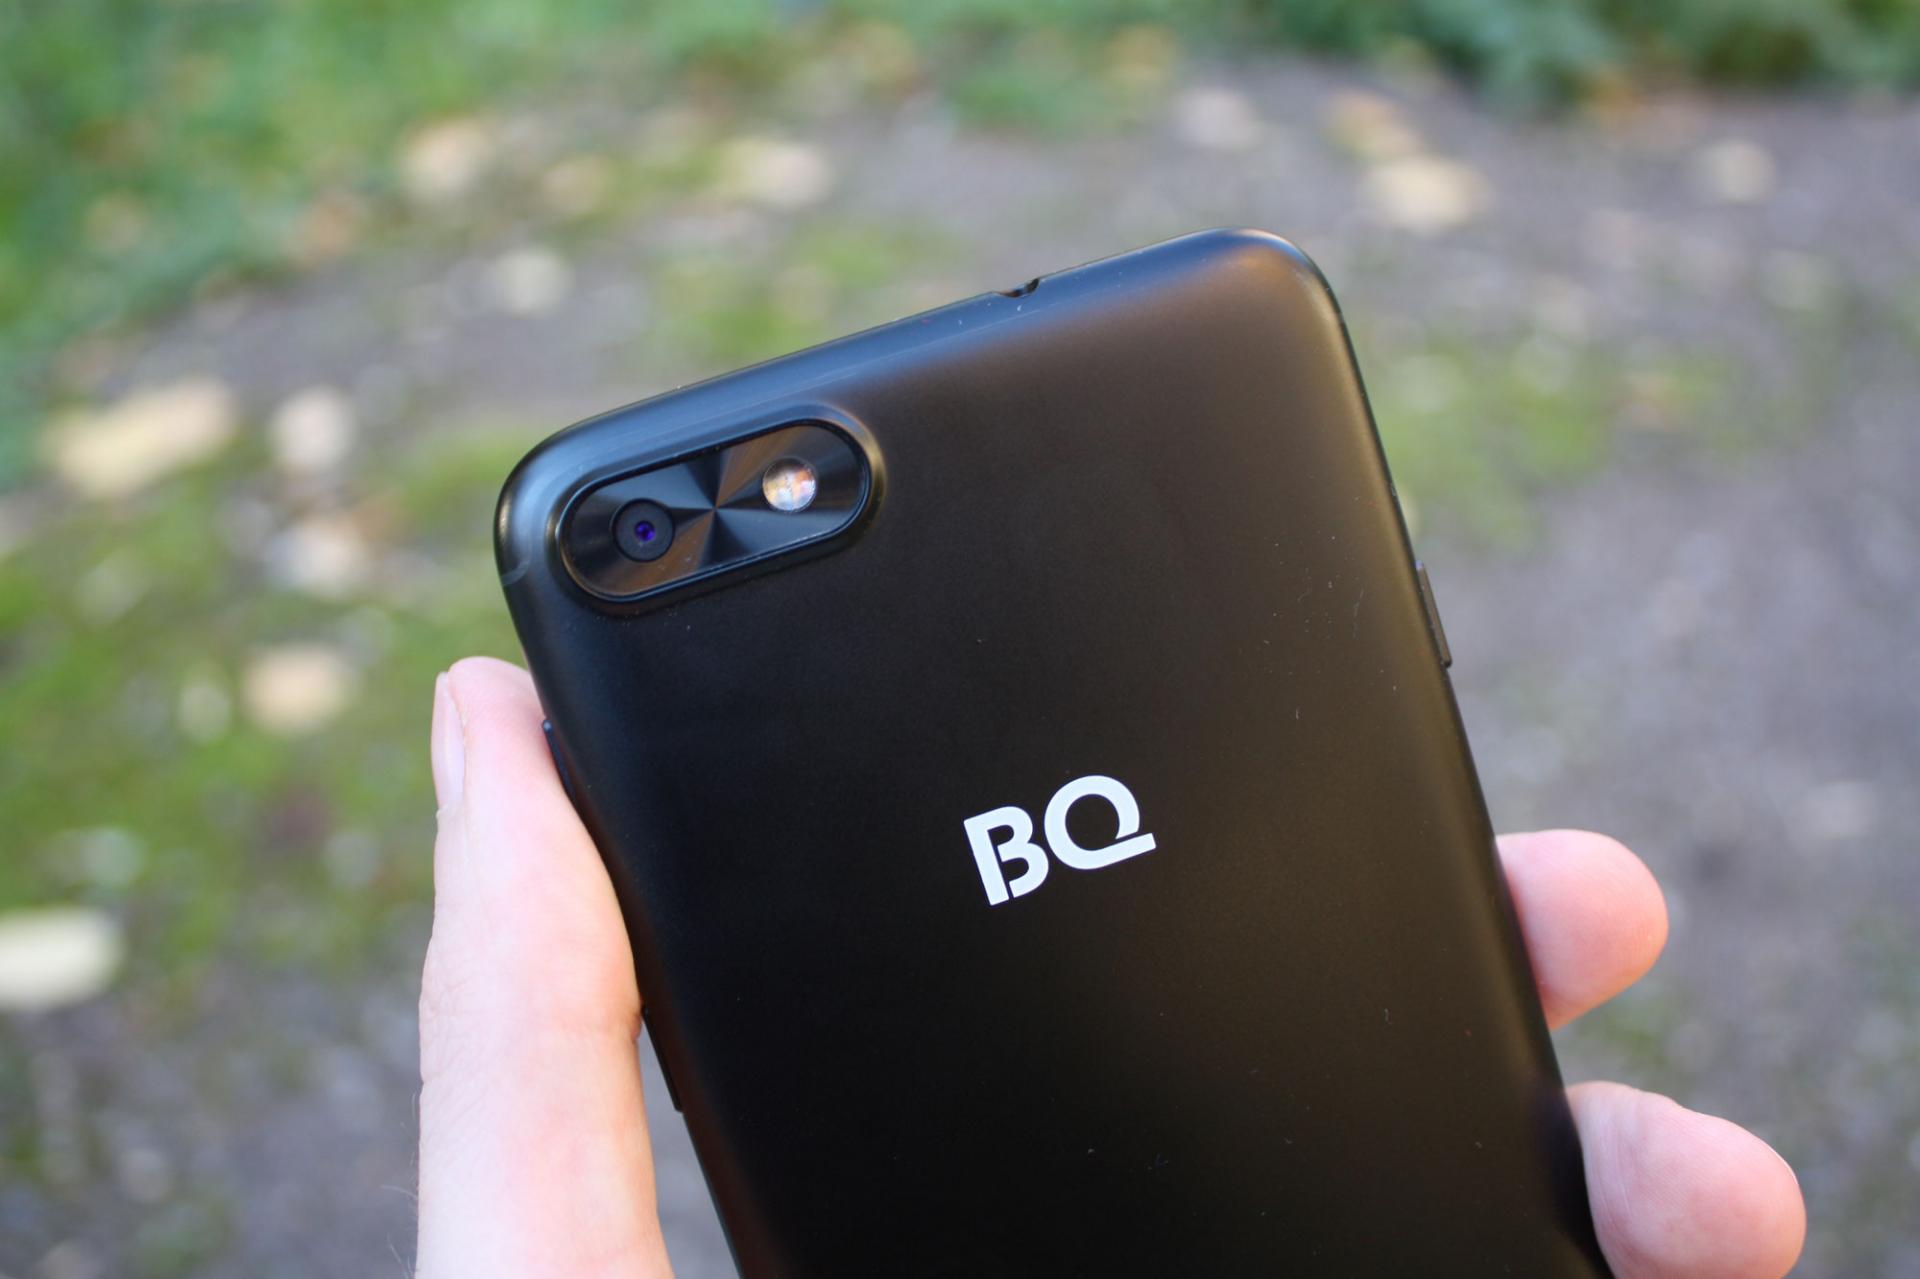 Обзор смартфона BQ Slim (BQ BL-5701)